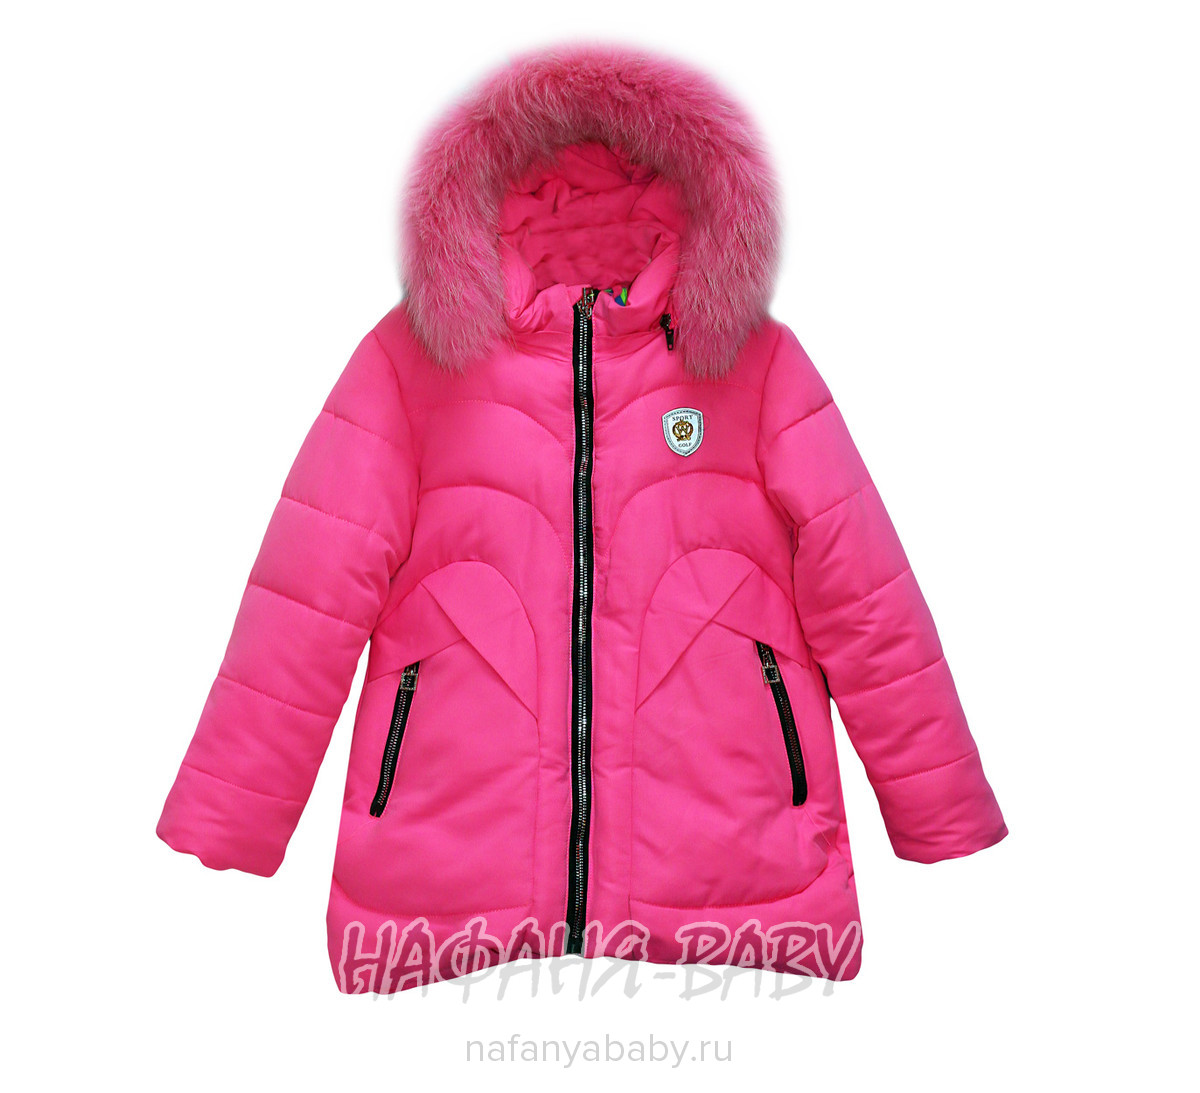 Детская зимняя куртка для девочки WIRX IZZY, купить в интернет магазине Нафаня. арт: 989.